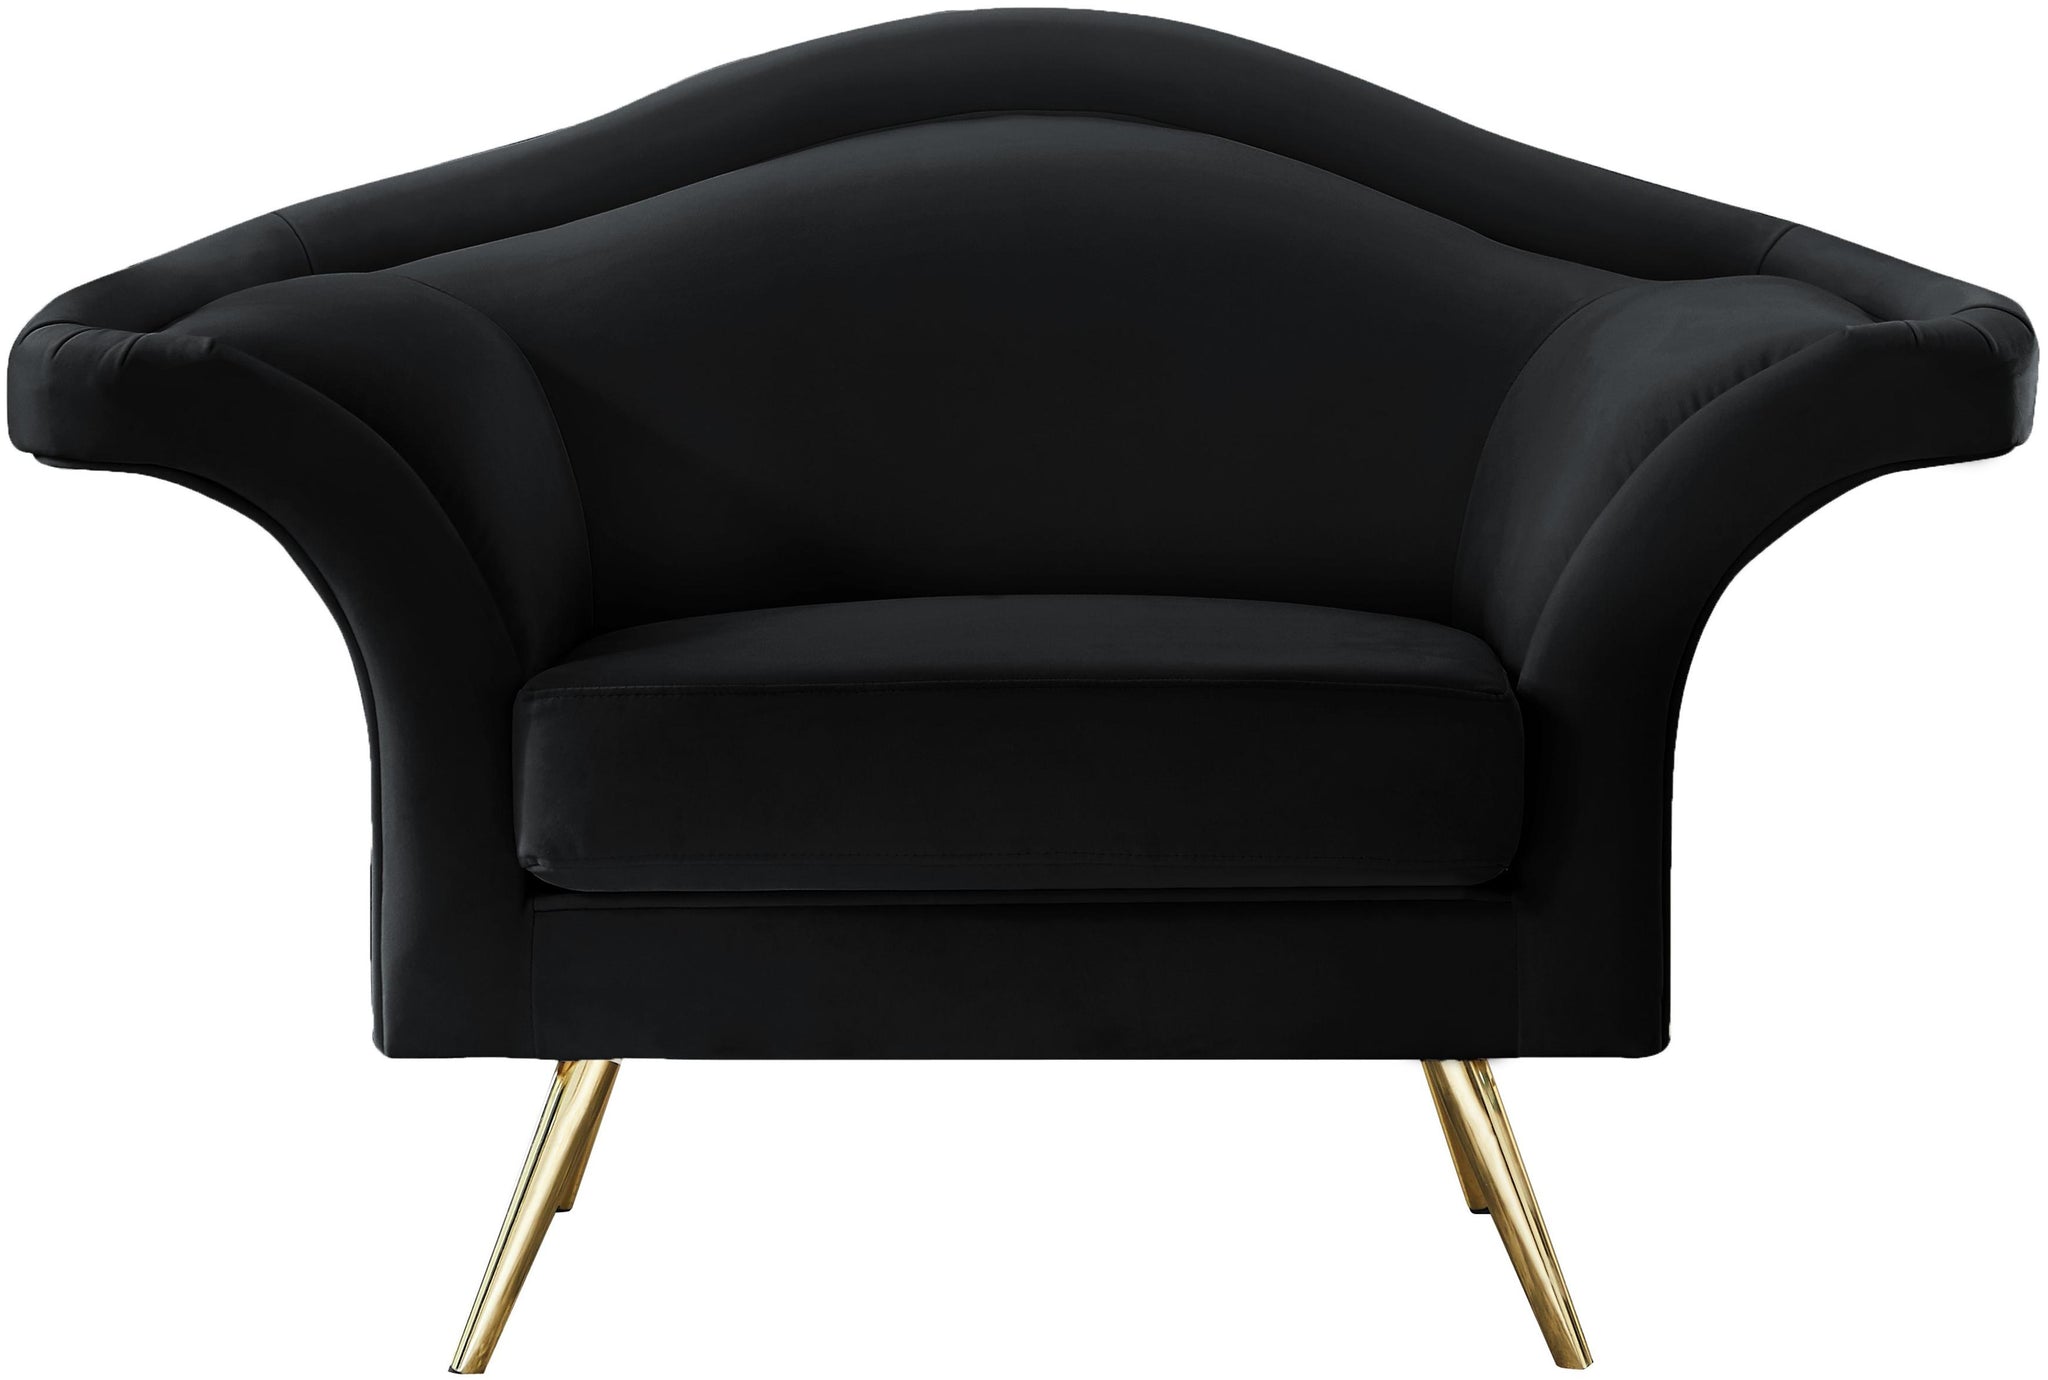 Lips Black Velvet Chair - Furnish 4 Less 98 (NY)*